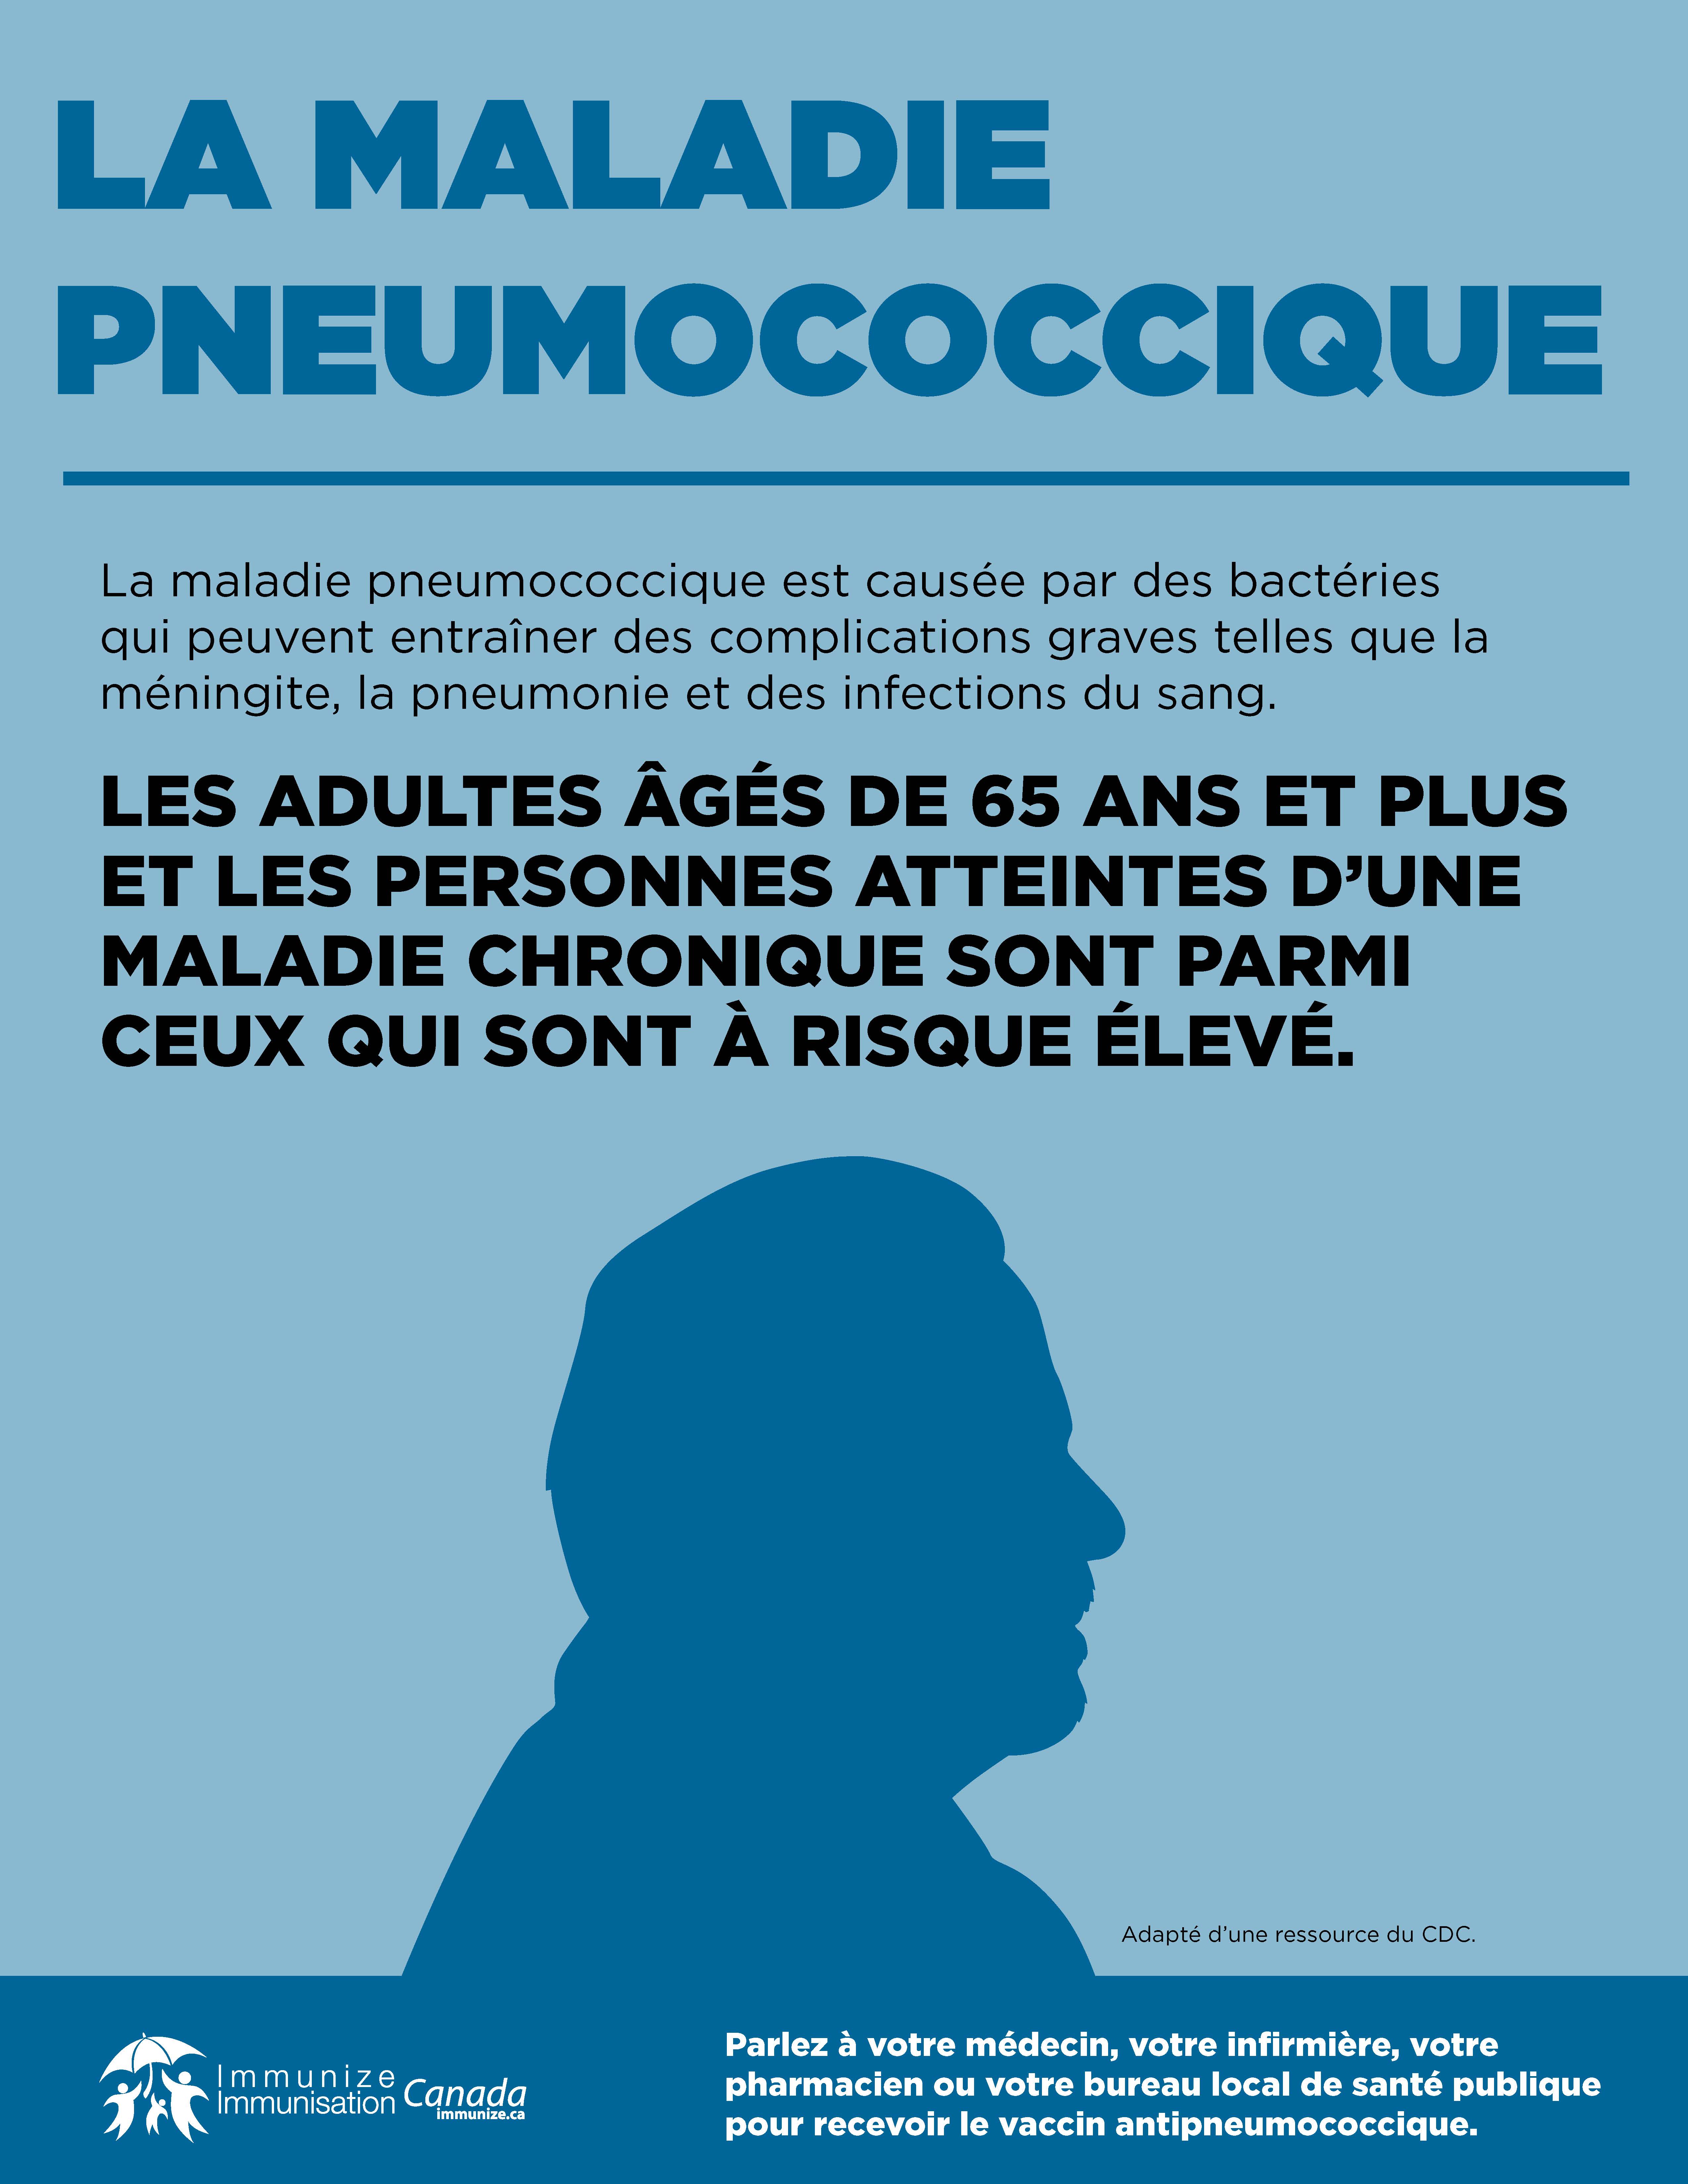 La maladie pneumoccocique - les adultes âgés de 65 ans et plus et les personnes atteintes d'une maladie chronique